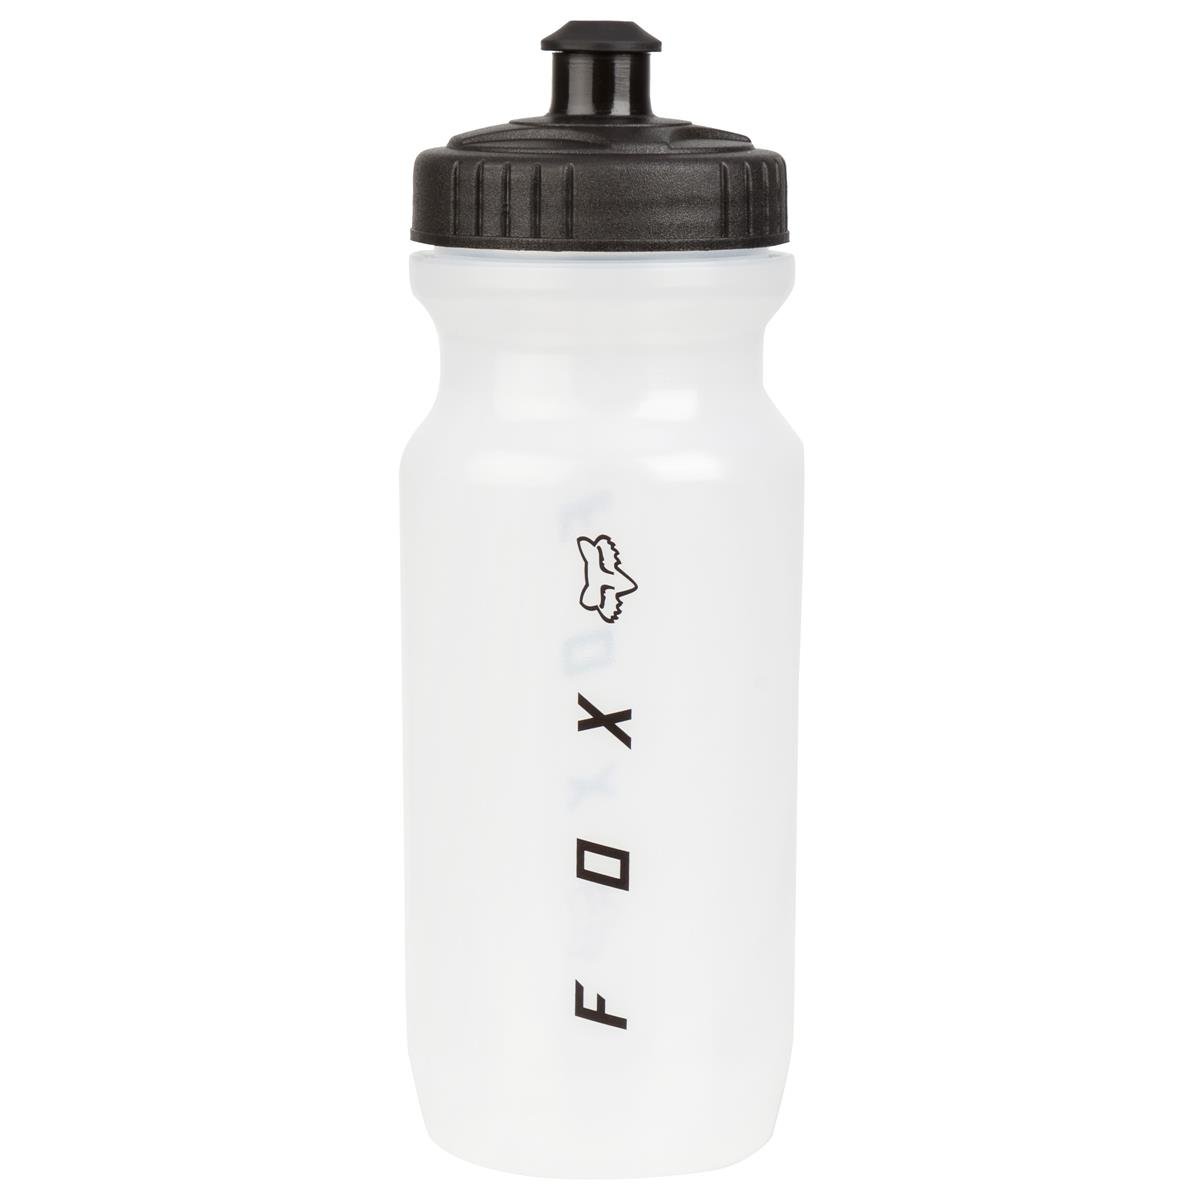 Fox Water Bottle Base Clear